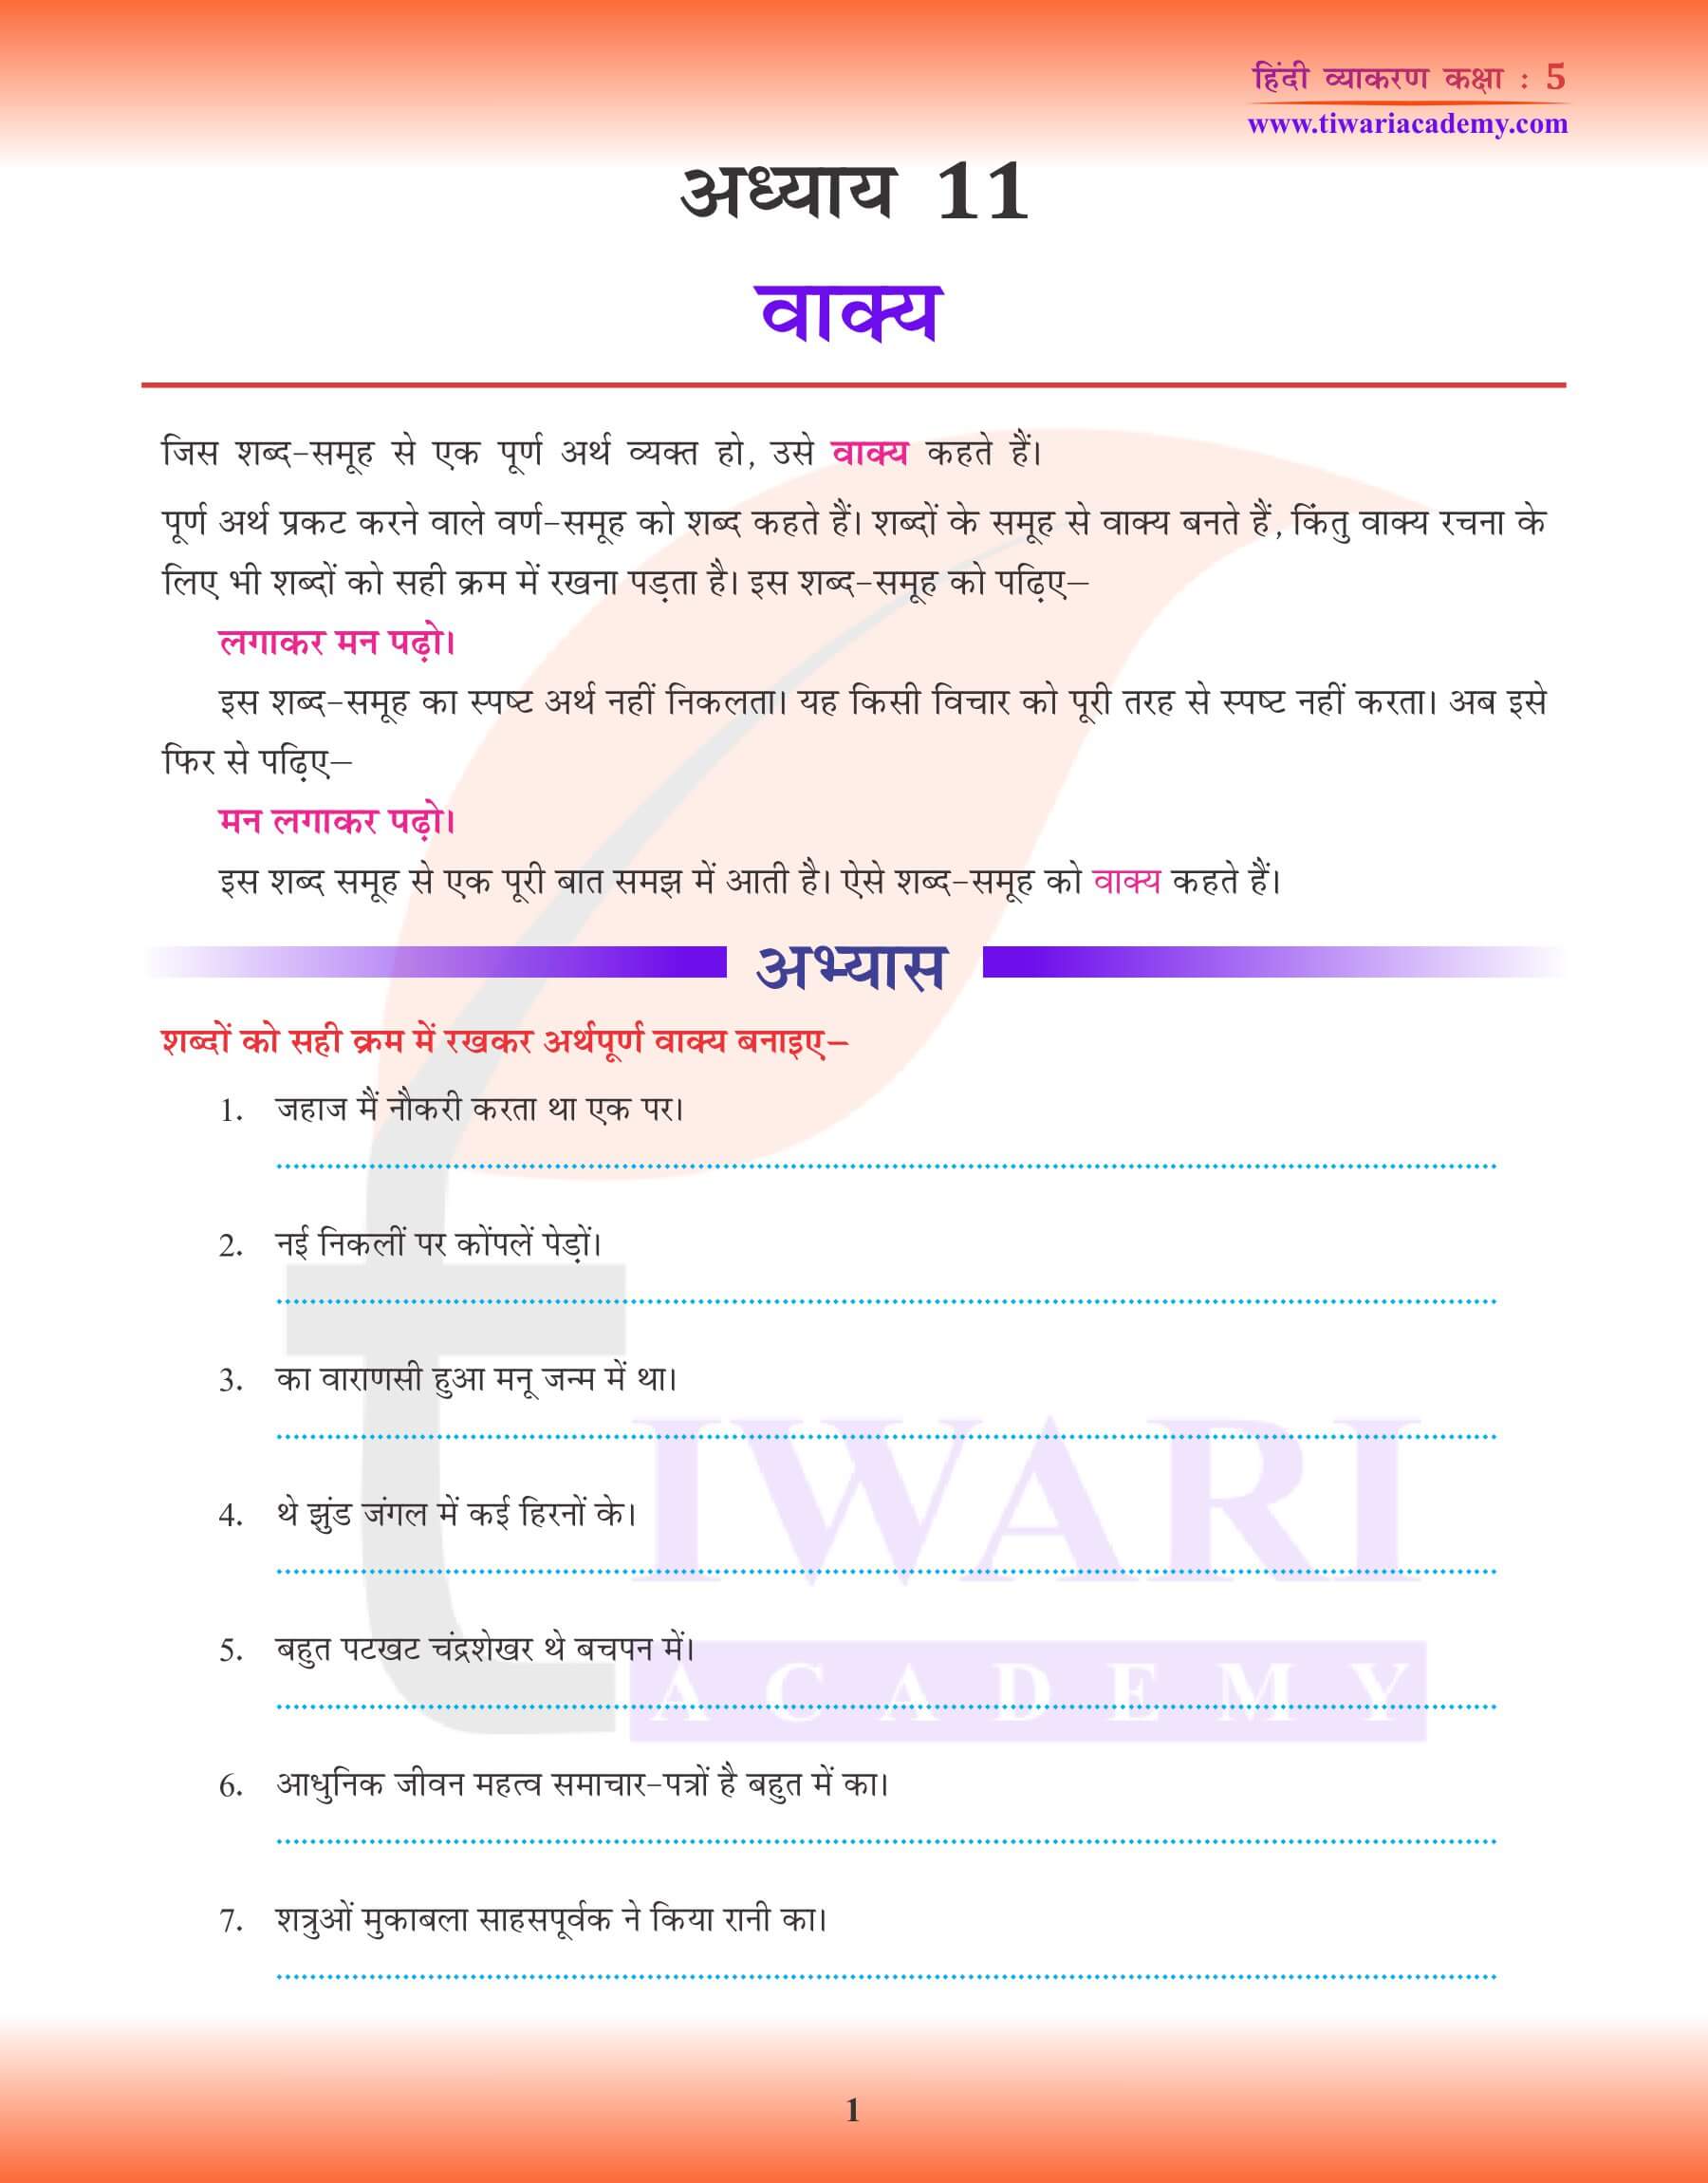 कक्षा 5 हिंदी व्याकरण में वाक्य बनाना